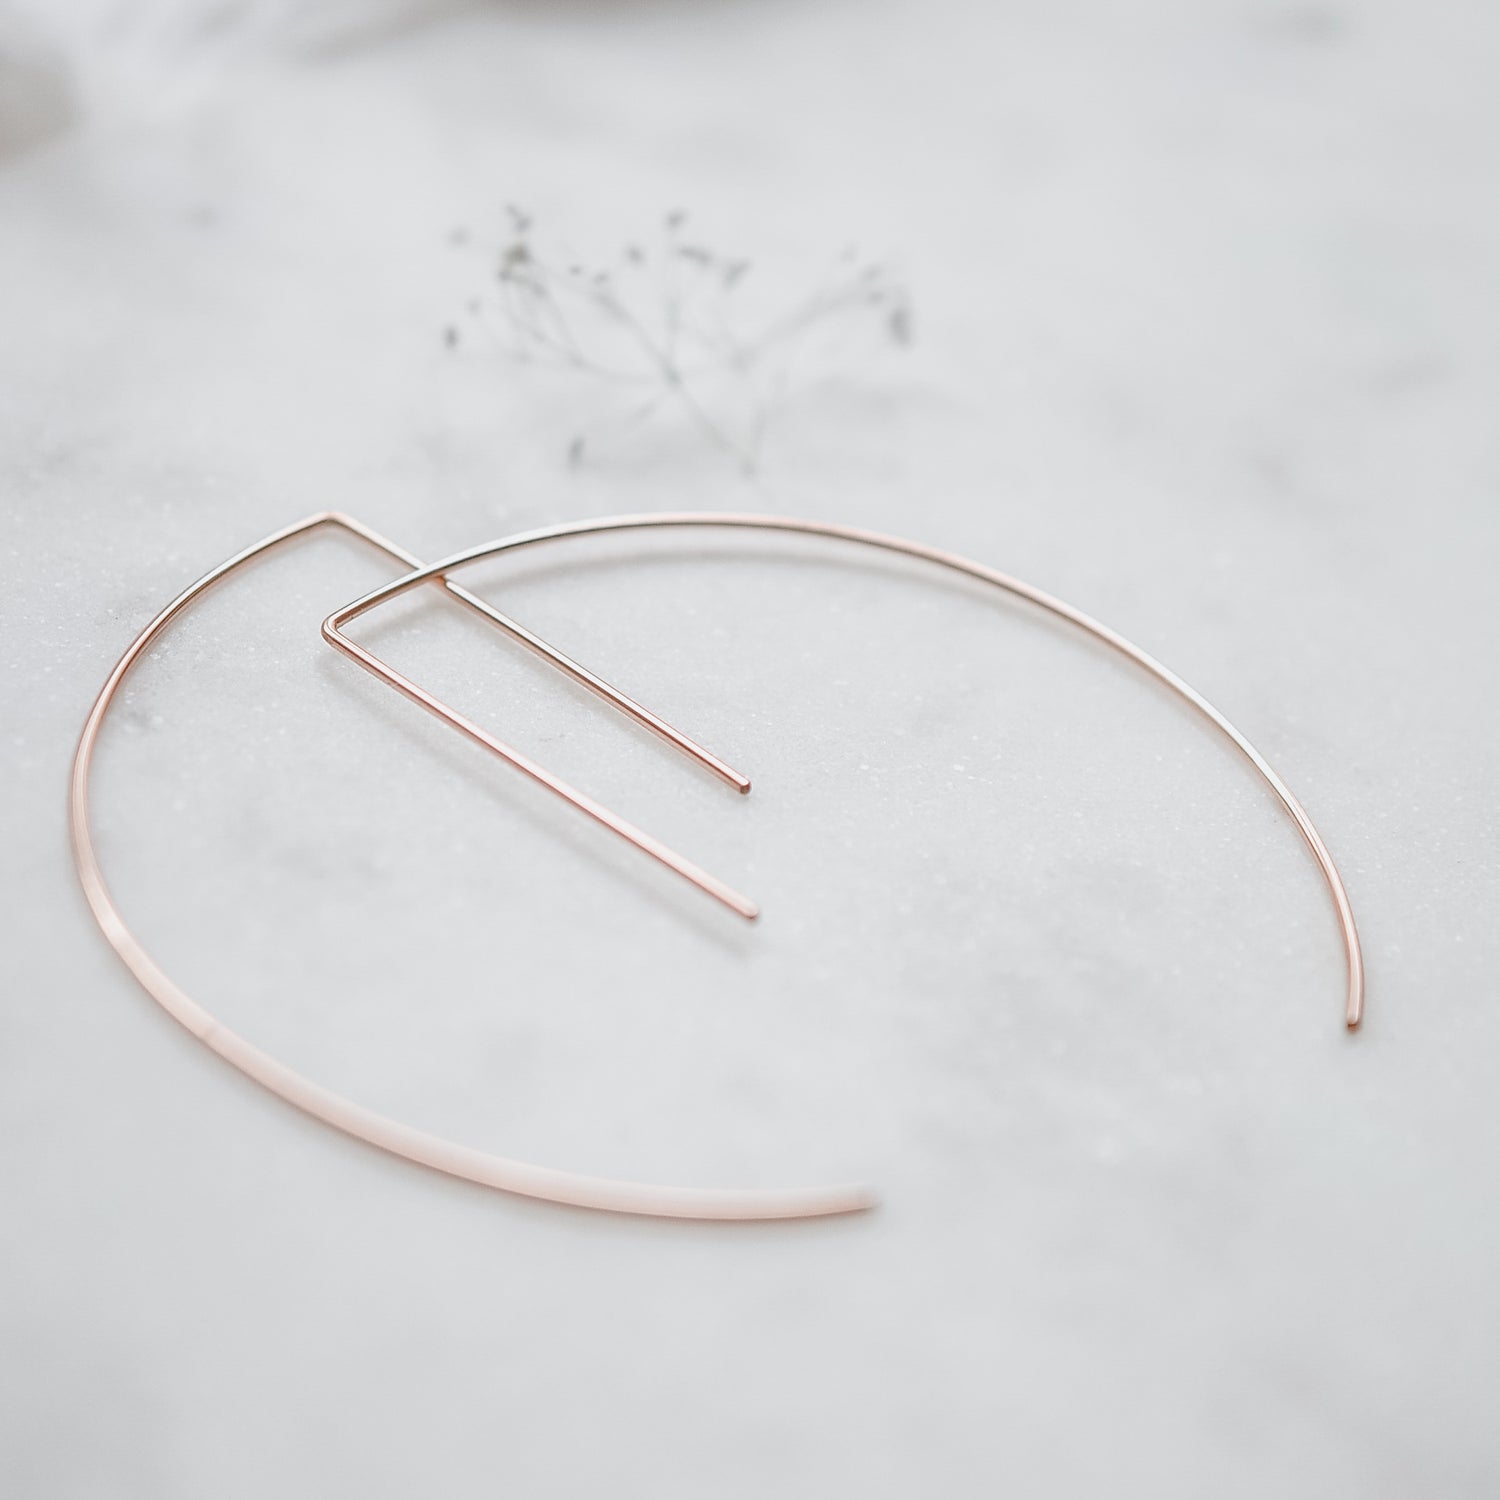 Archery Earrings - Quad Espresso Jewelry